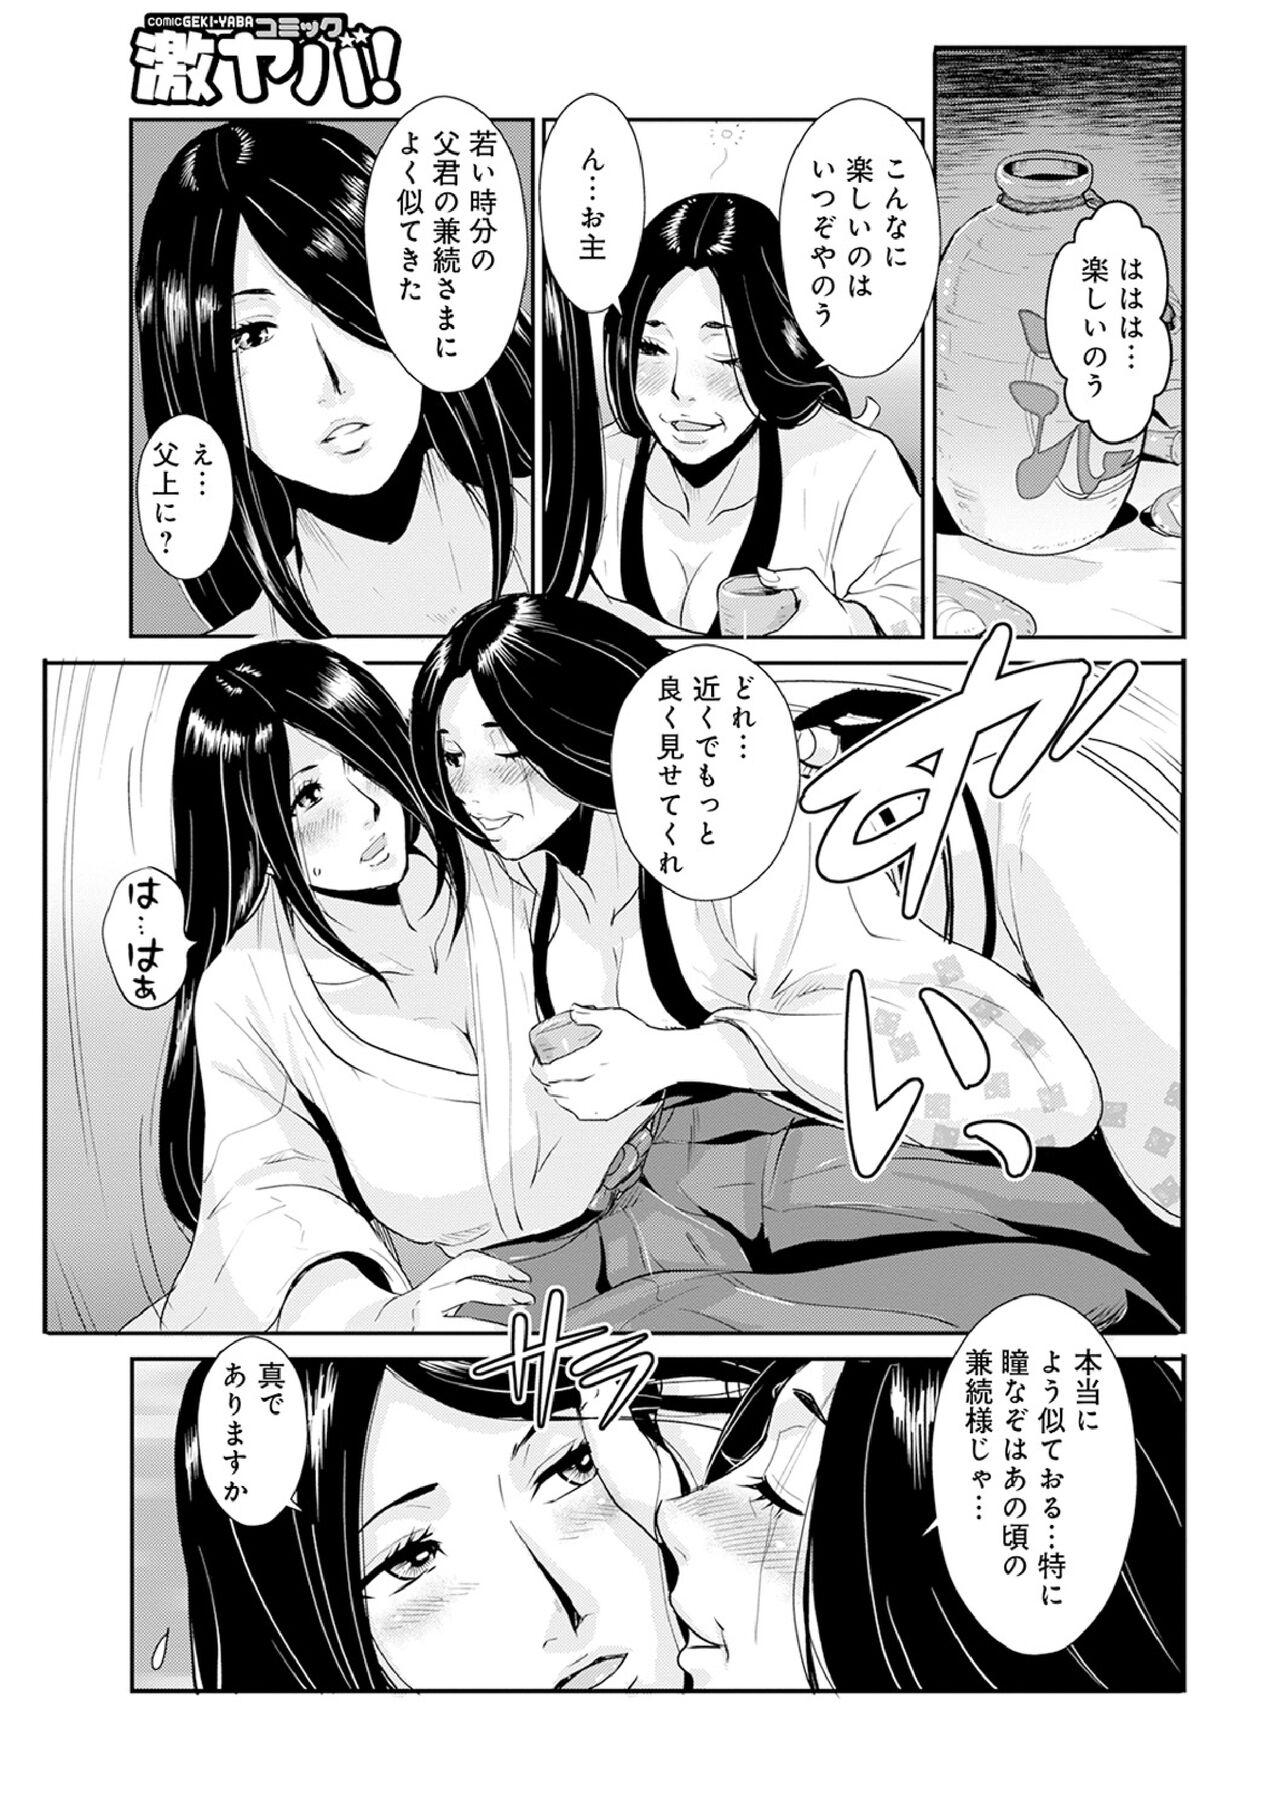 Chica Harami samurai 12 Couple Porn - Page 11